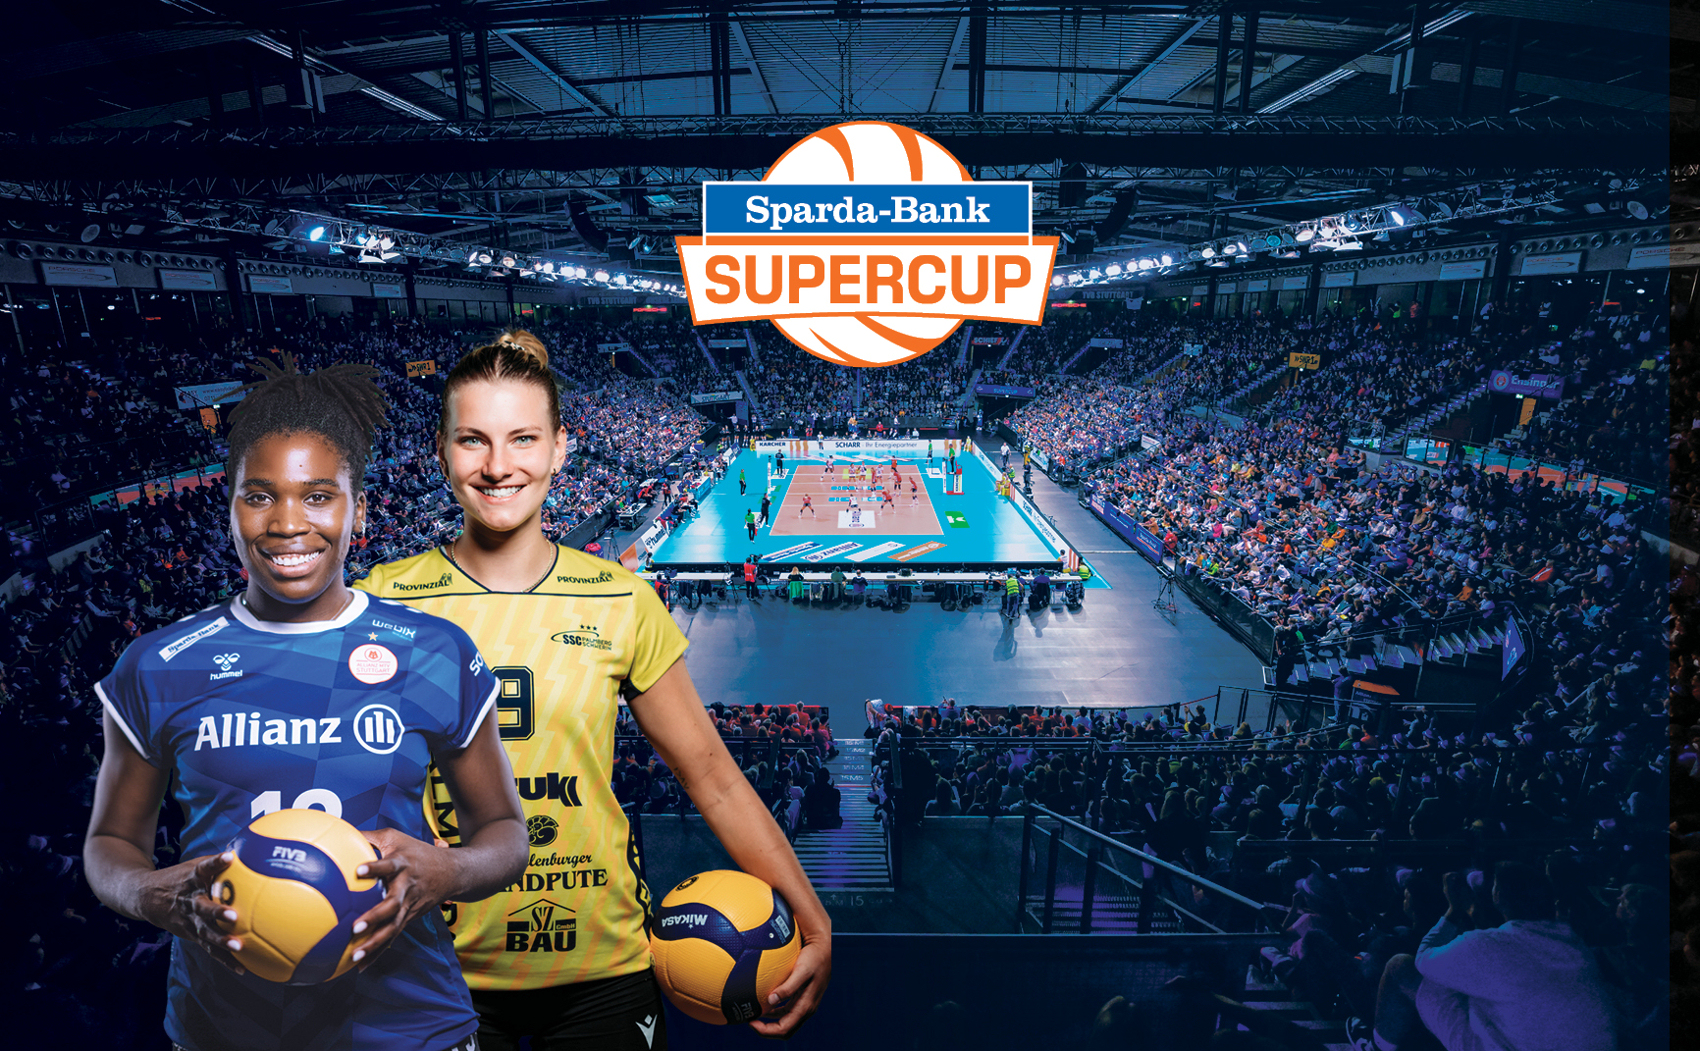 Das Duell des Jahres - der Sparda-Bank Supercup: Stuttgart vs. Schwerin